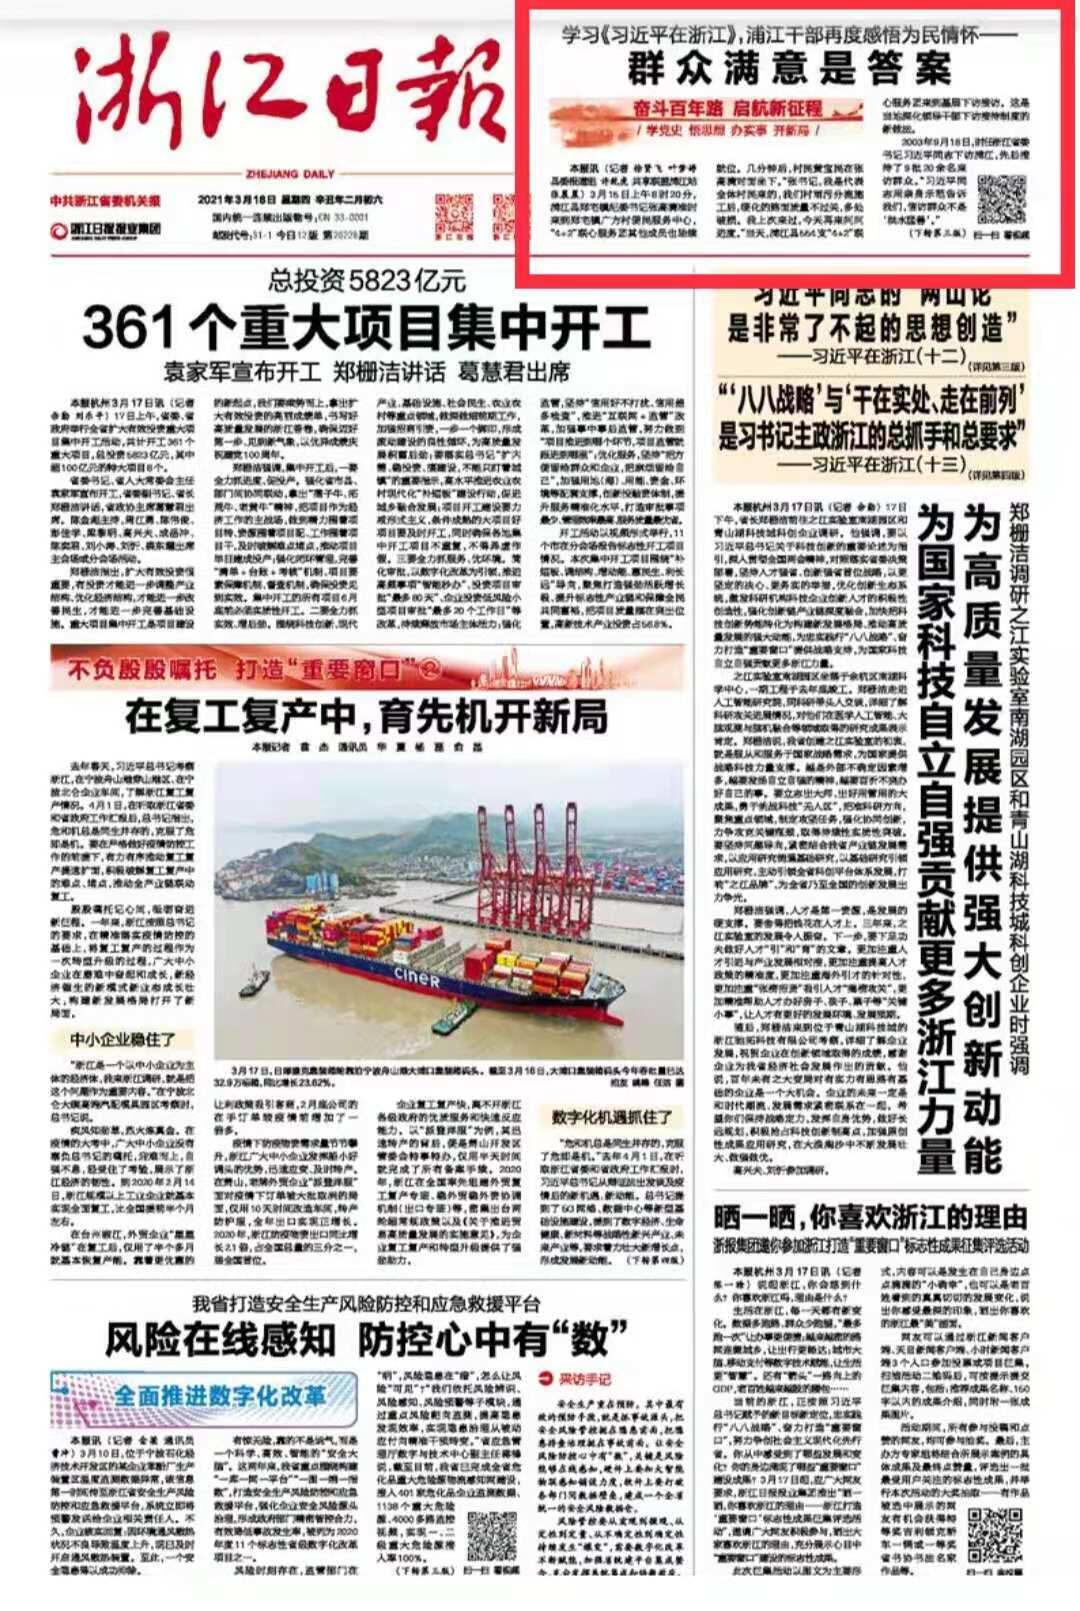 习近平的足迹丨（初心·使命）红船映初心|界面新闻 · 中国